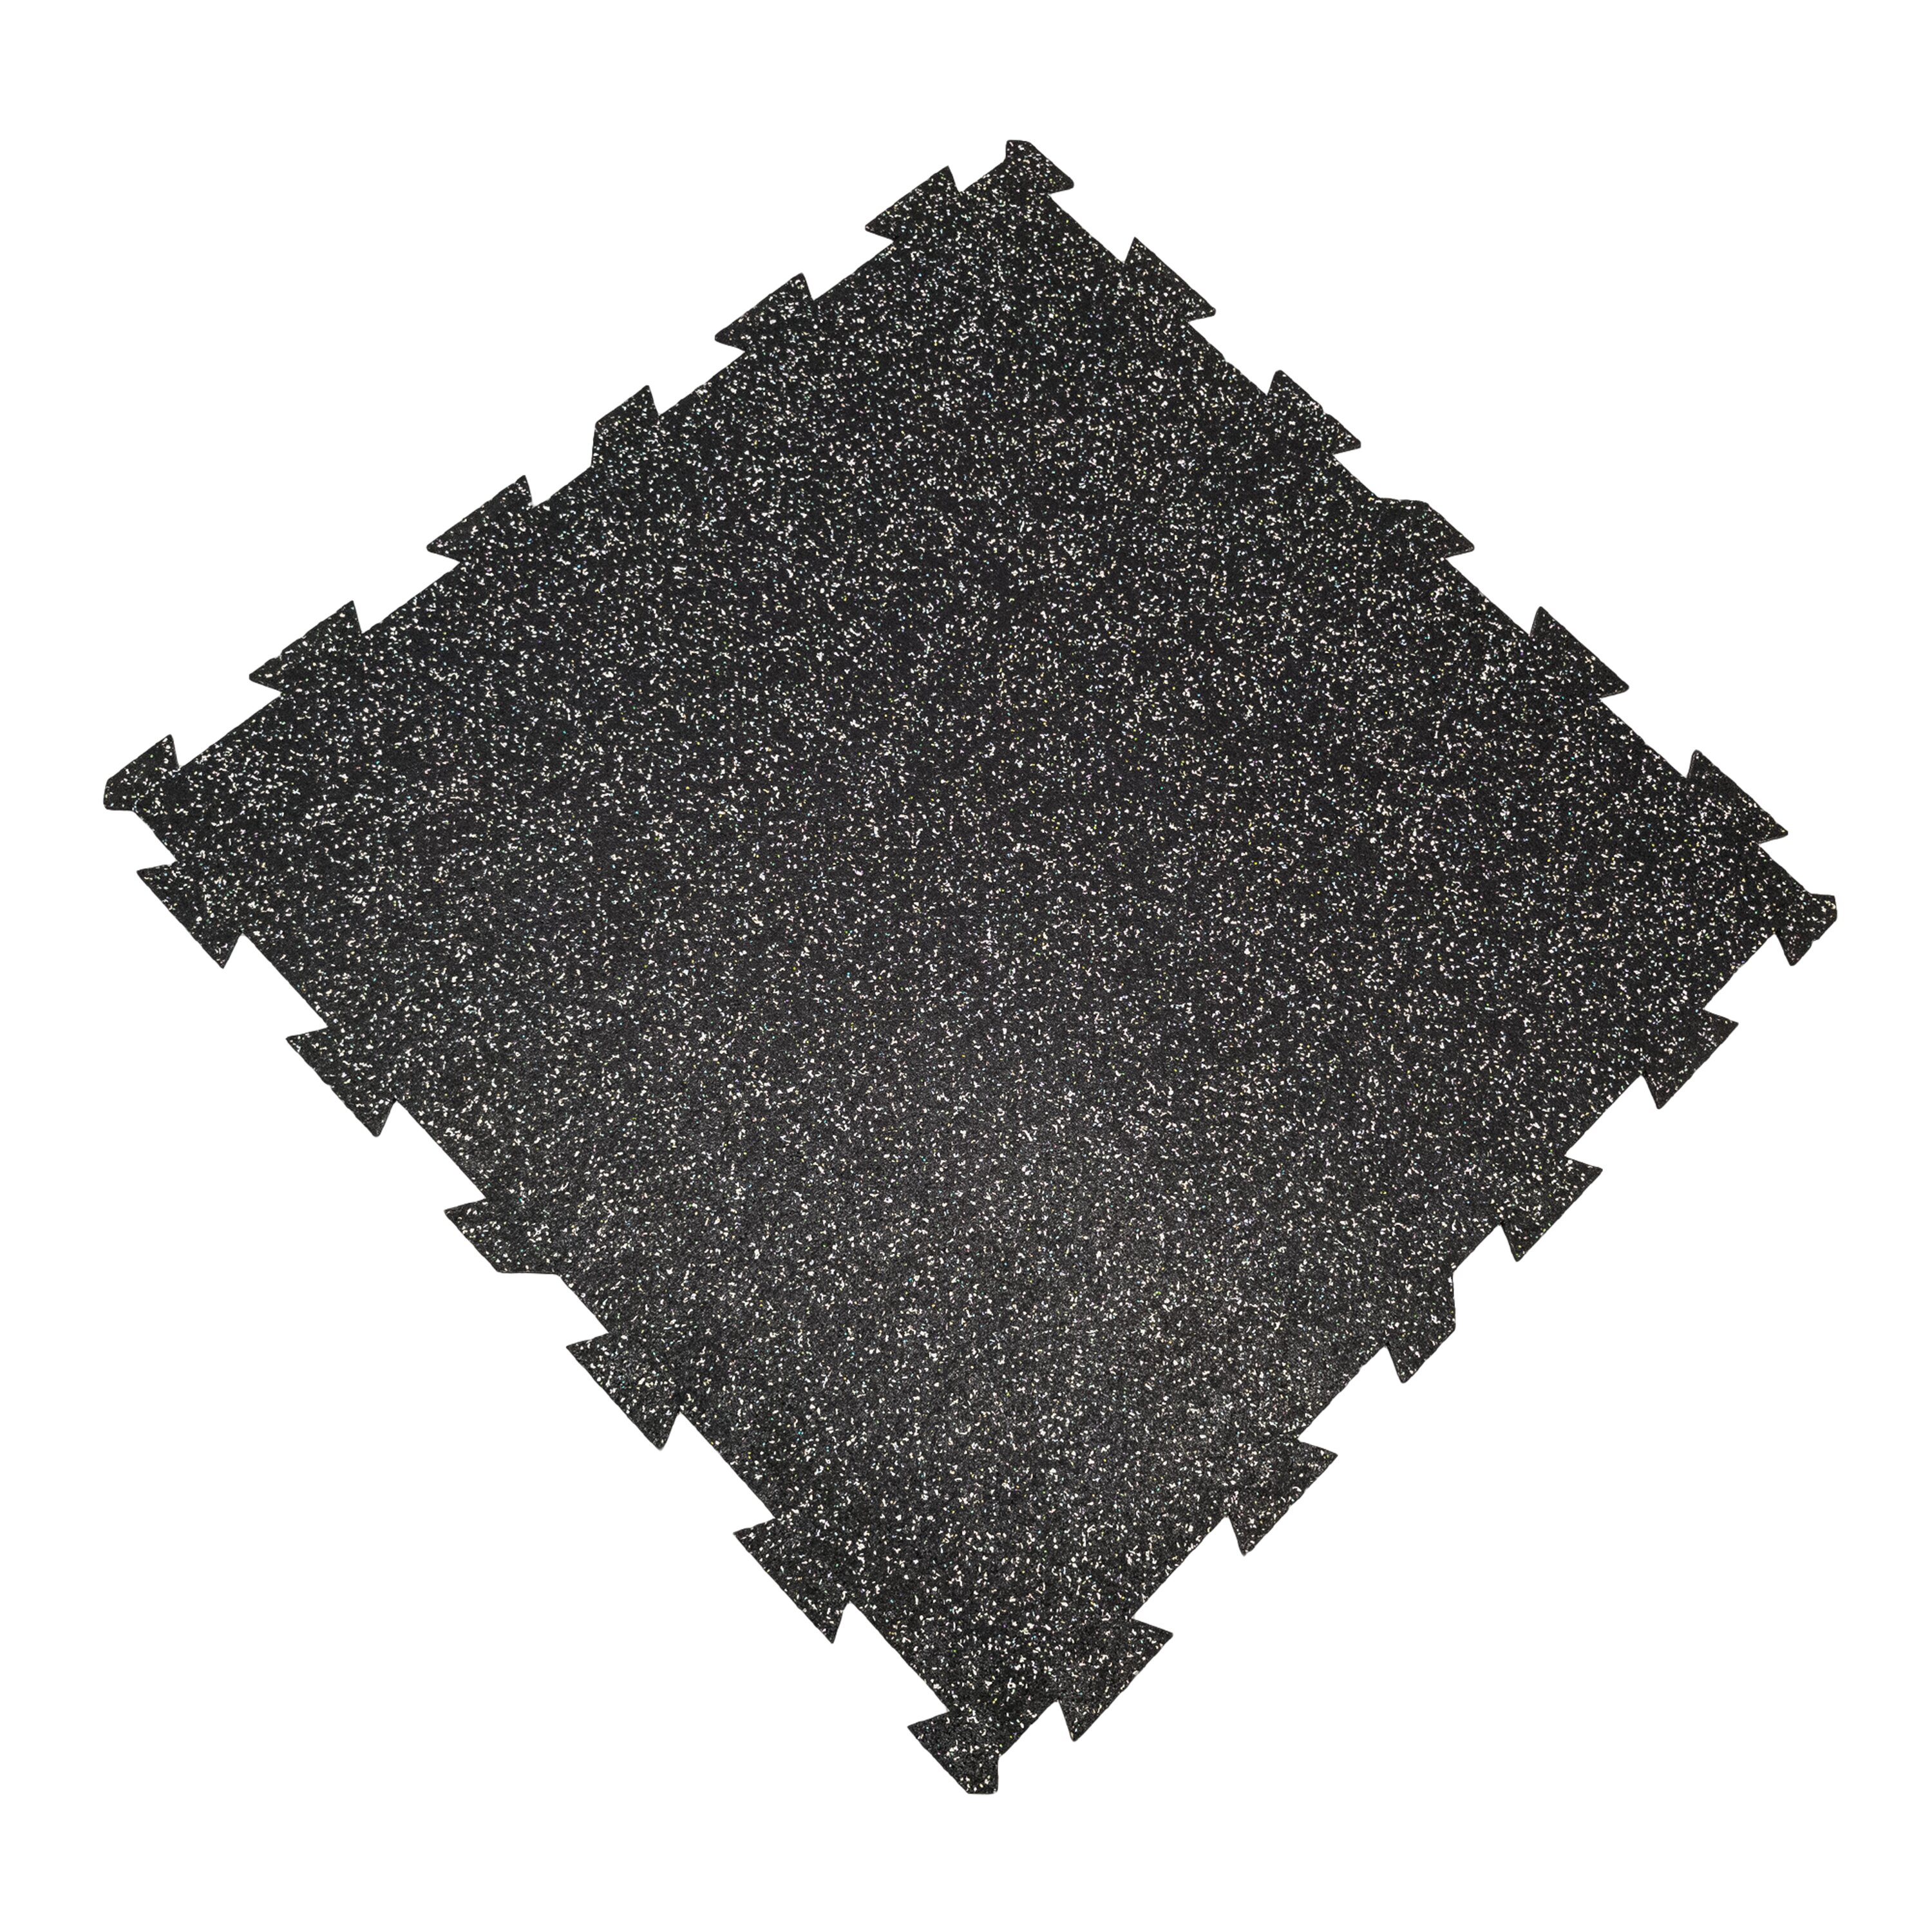 Černo-bílá podlahová guma FLOMA FitFlo SF1050 - délka 100 cm, šířka 100 cm, výška 0,8 cm